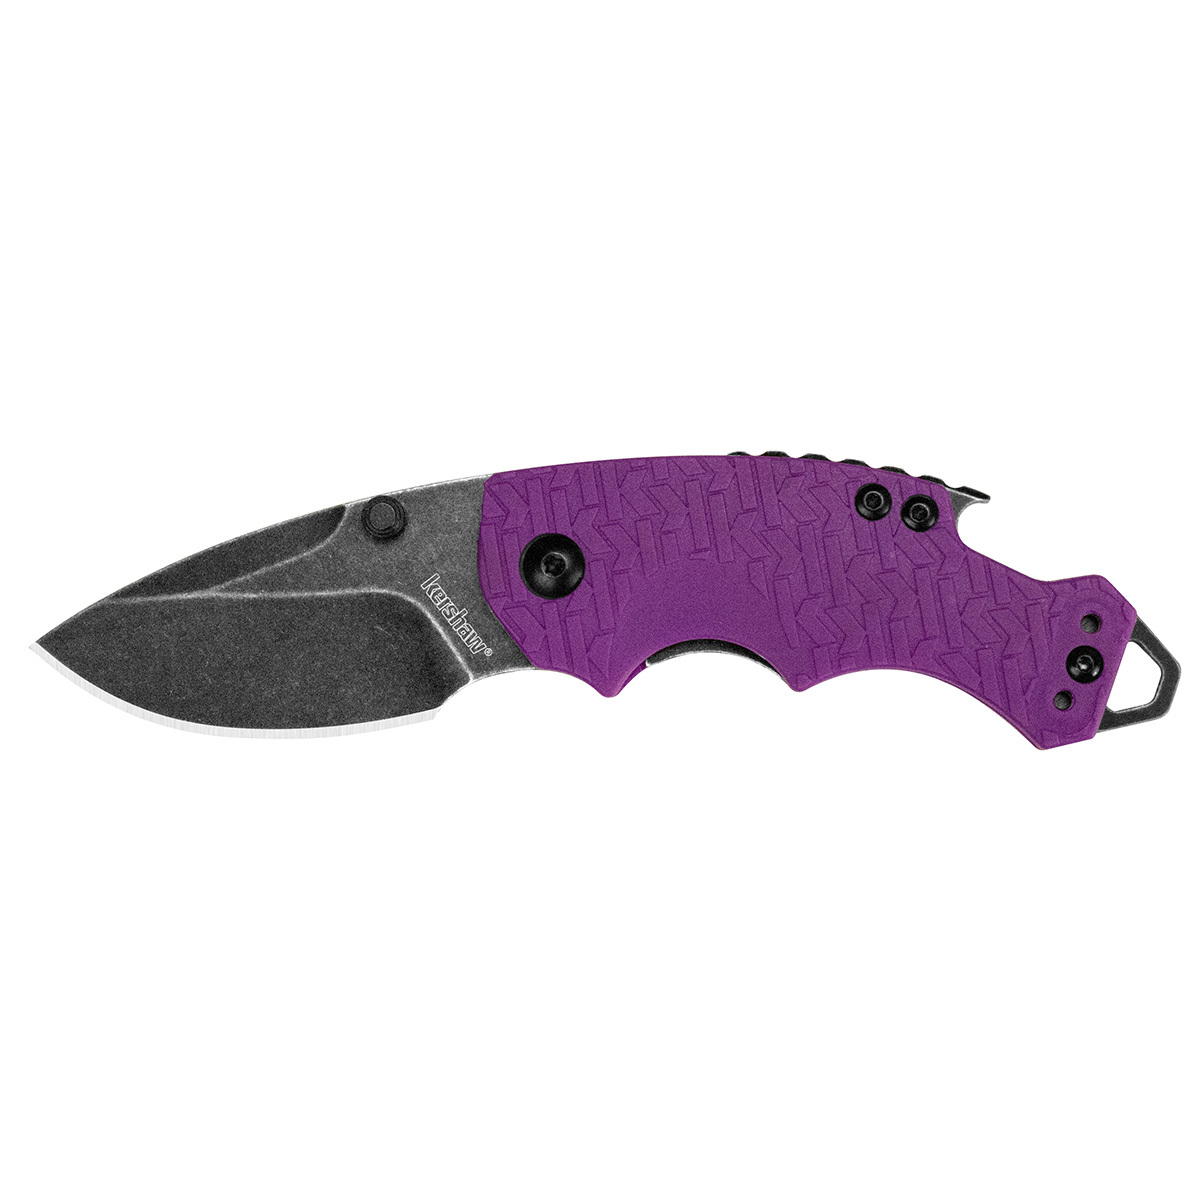 Нож складной Shuffle - KERSHAW 8700PURBW, сталь 8Cr13MoV c покрытием BlackWash™, рукоять текстурированный термопластик GFN фиолетового цвета - фото 1